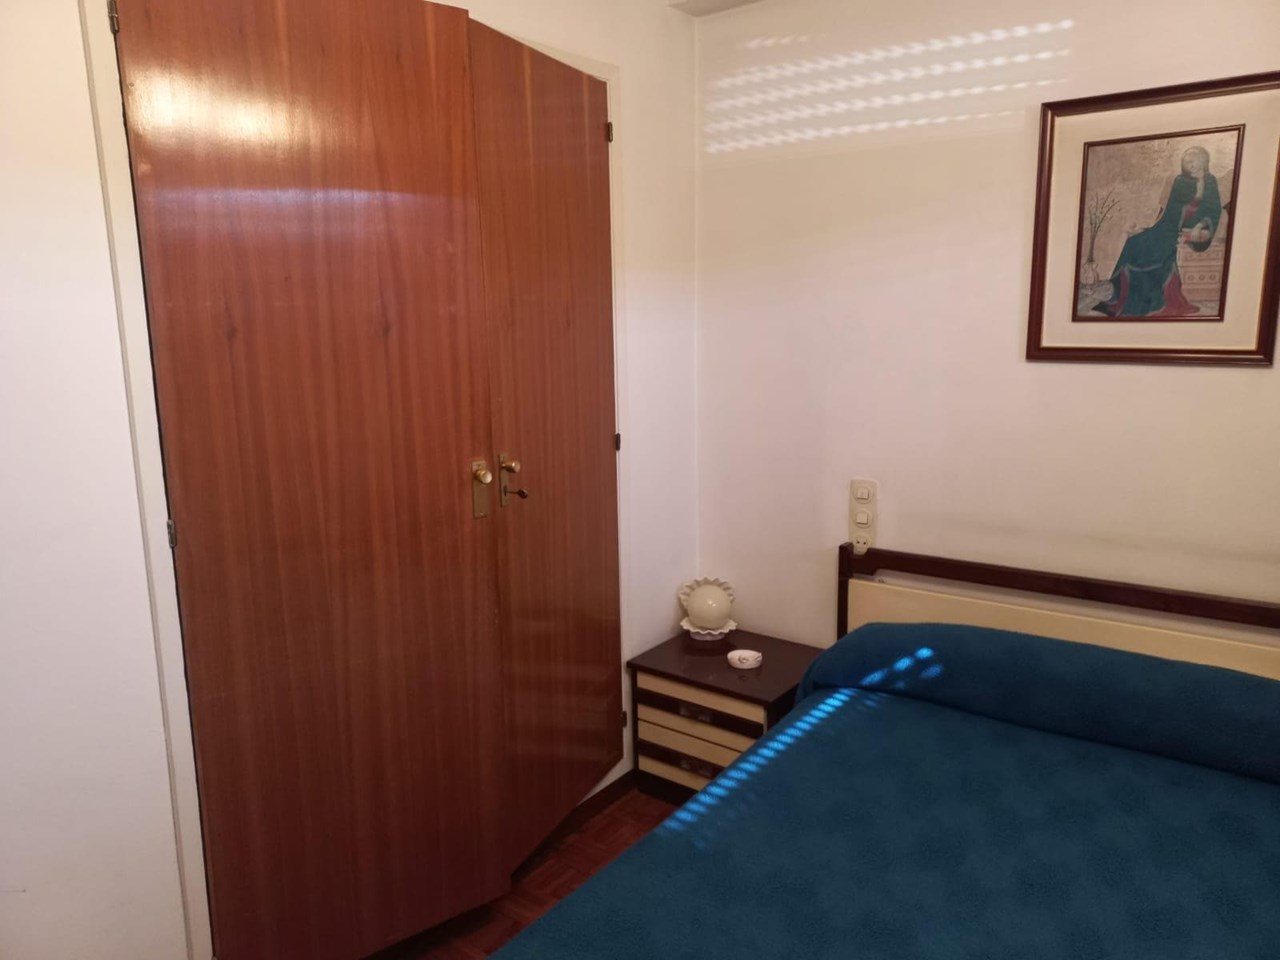 Foto 12 Coruña, 4 dormitorios + 1 dormitorio, despacho, 2 baños + aseo